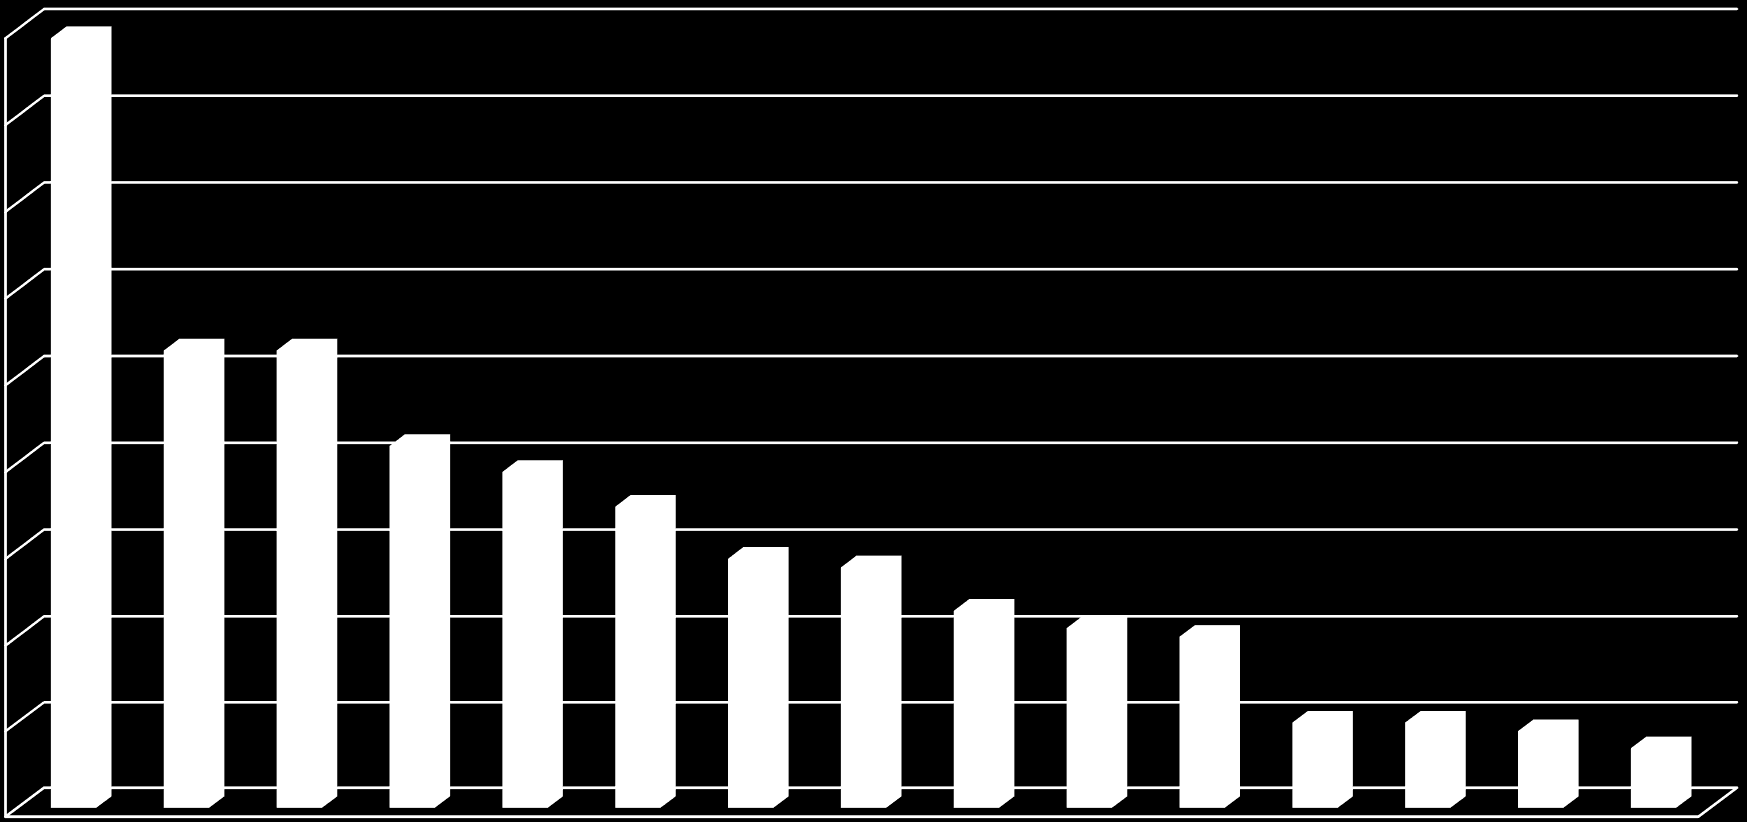 Gelen Öğrenci Sayıları (2012-2013) 90 89 80 70 60 53